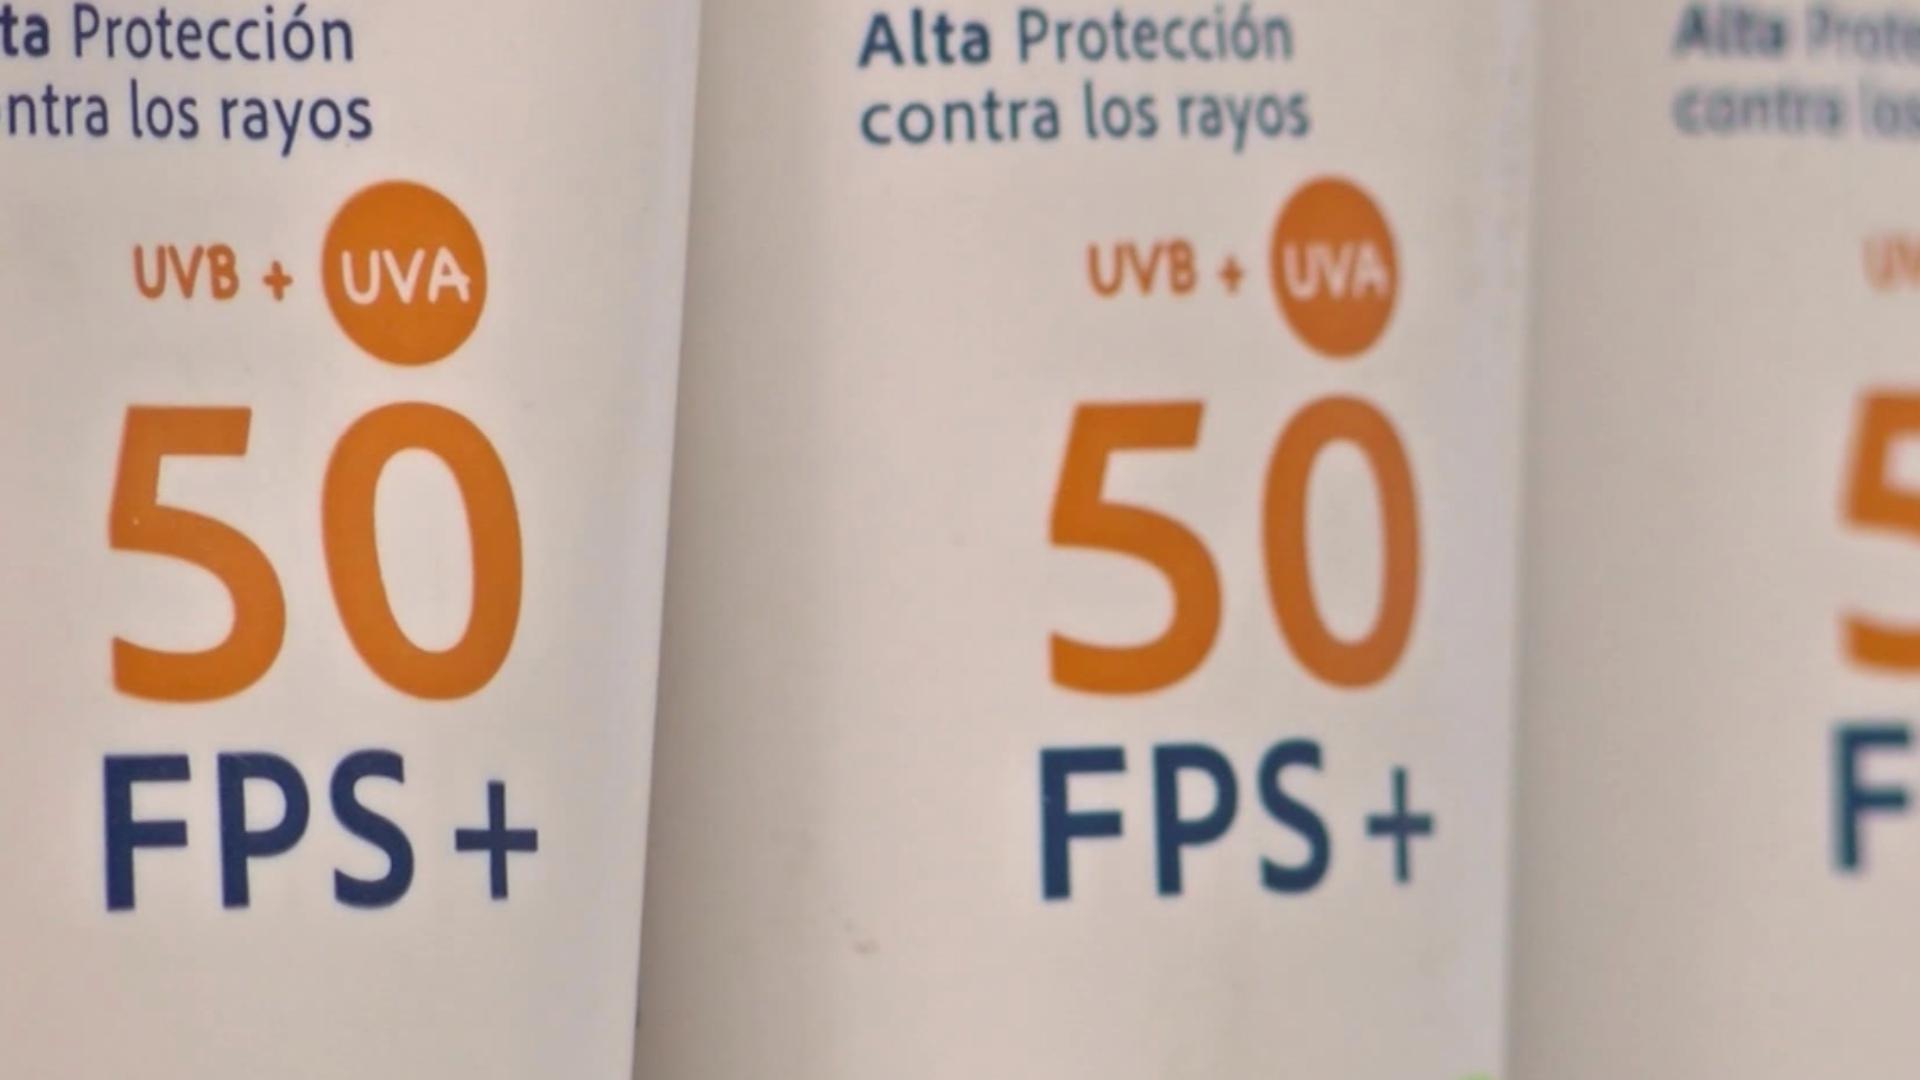 Elección de protectores solares para prevenir daños en la piel